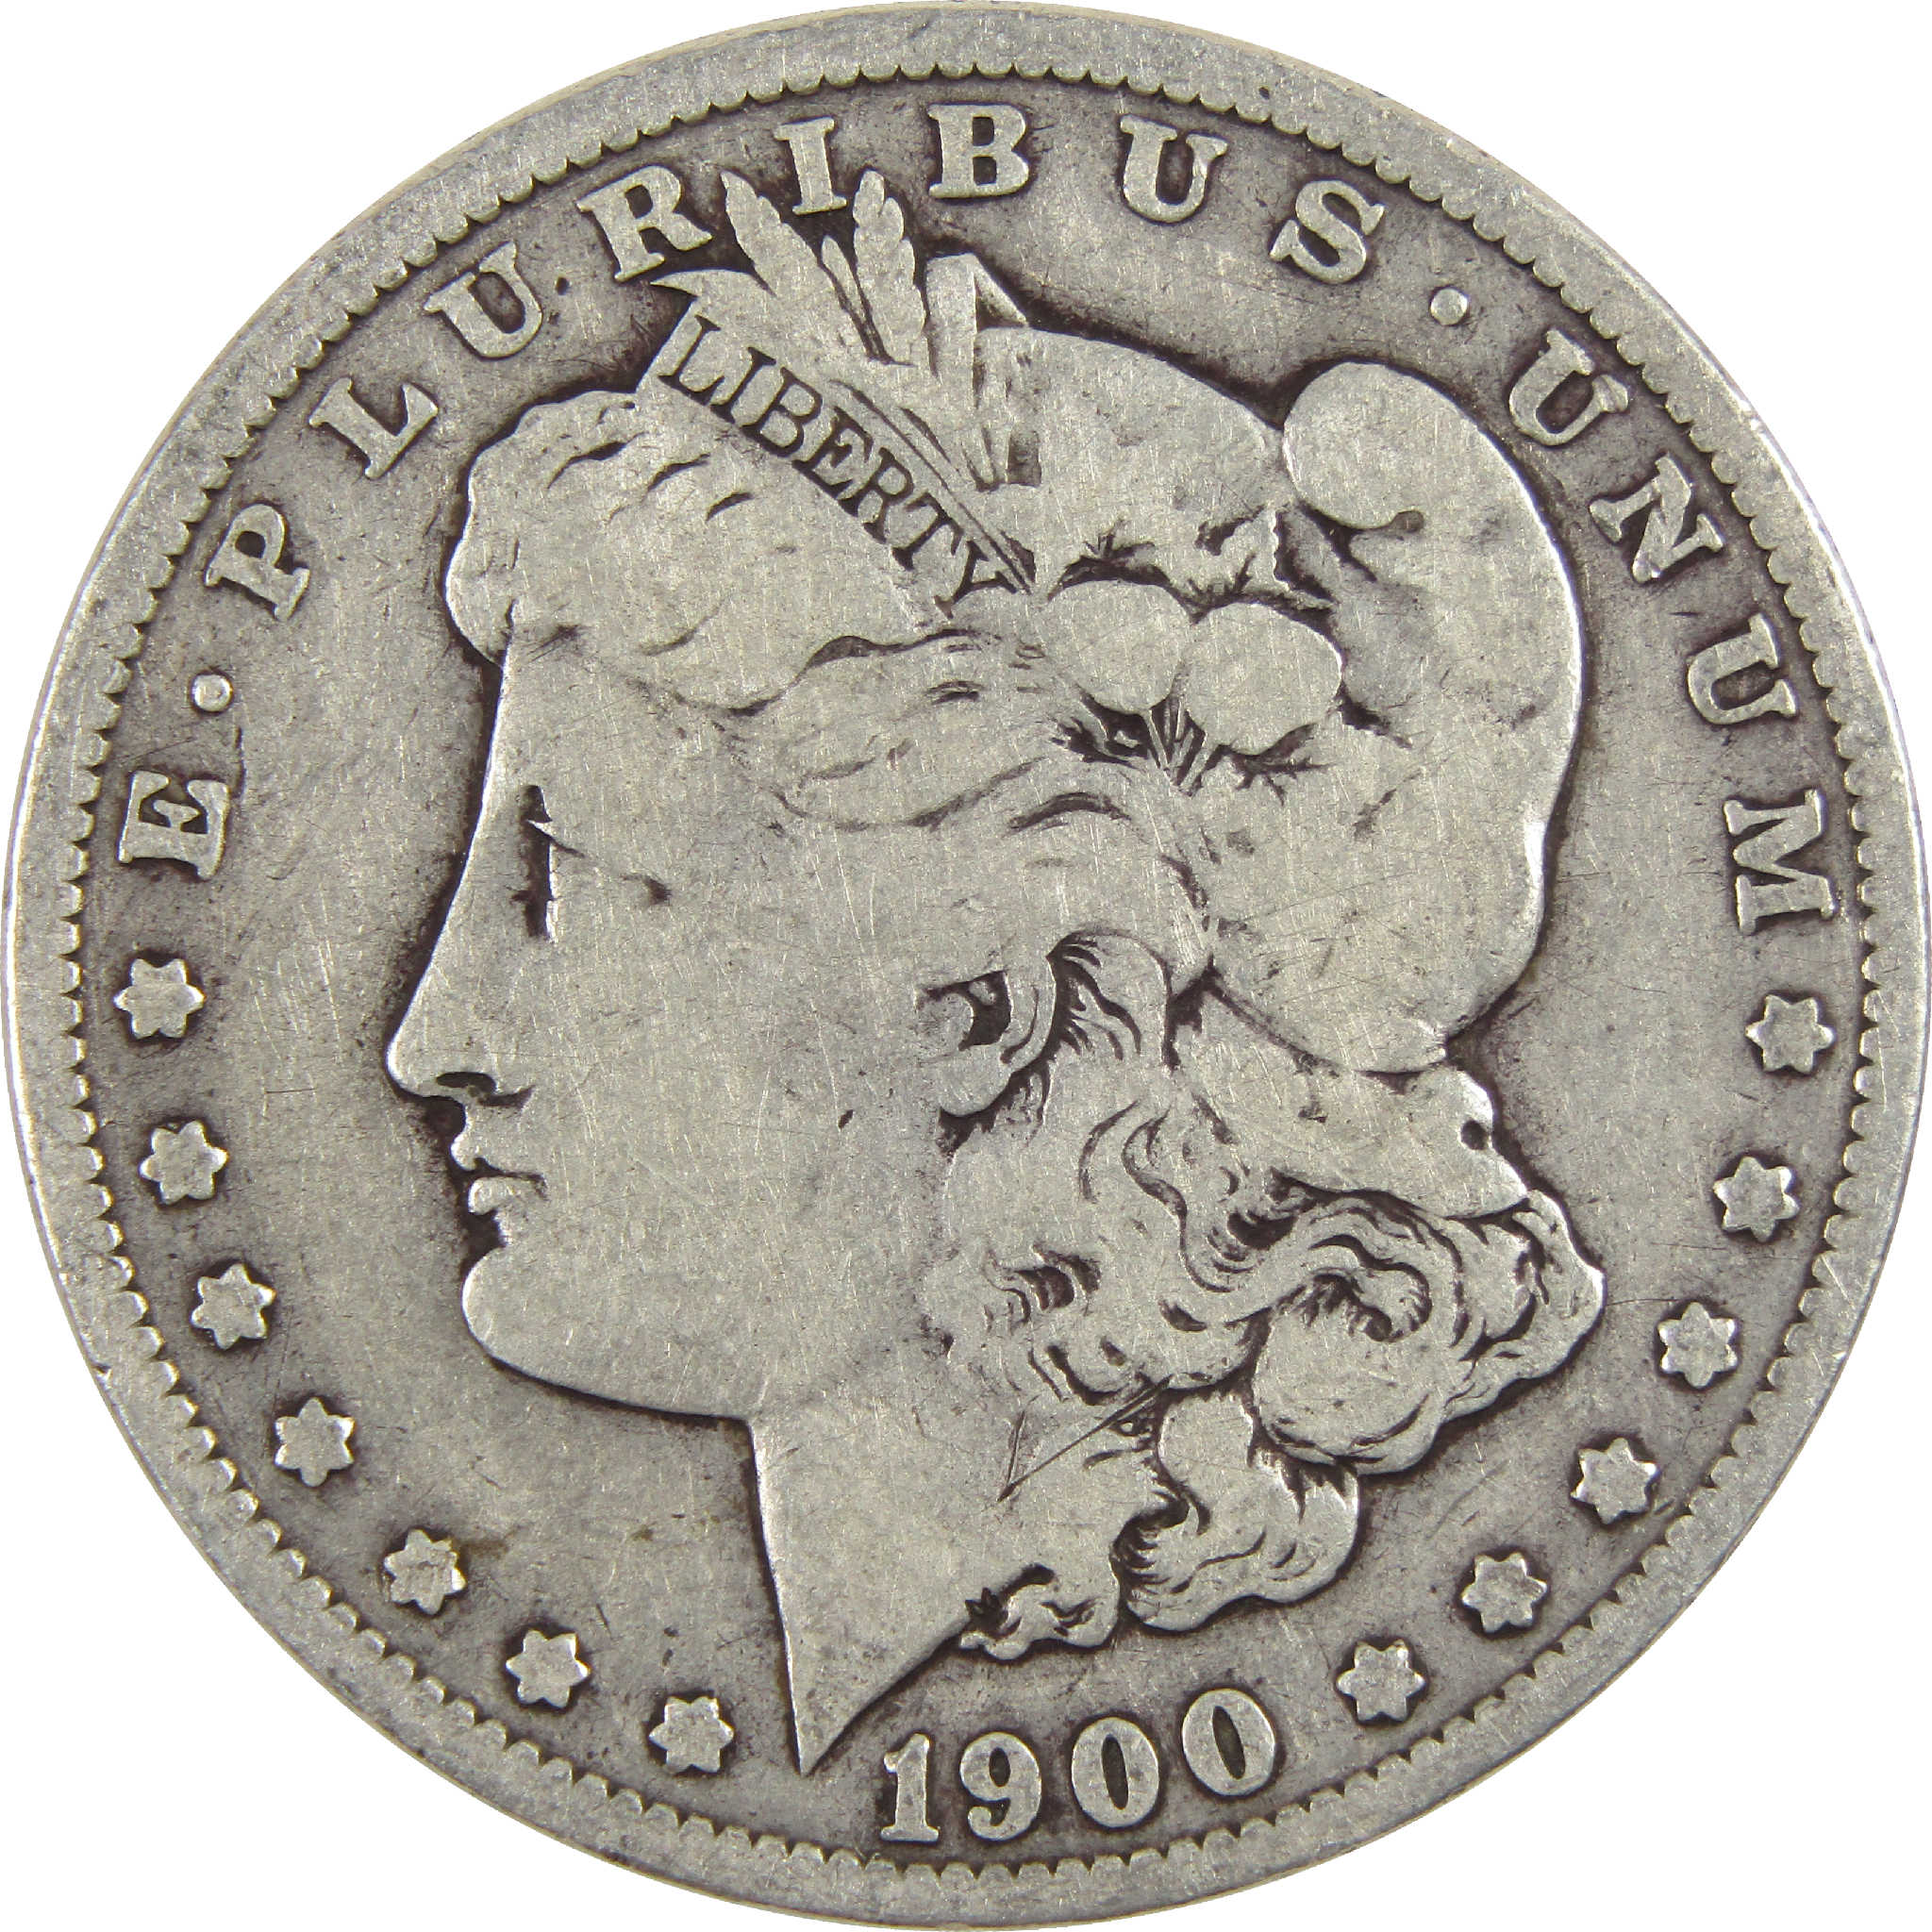 1900 Morgan Dollar VG Very Good Silver $1 Coin - Morgan coin - Morgan silver dollar - Morgan silver dollar for sale - Profile Coins &amp; Collectibles